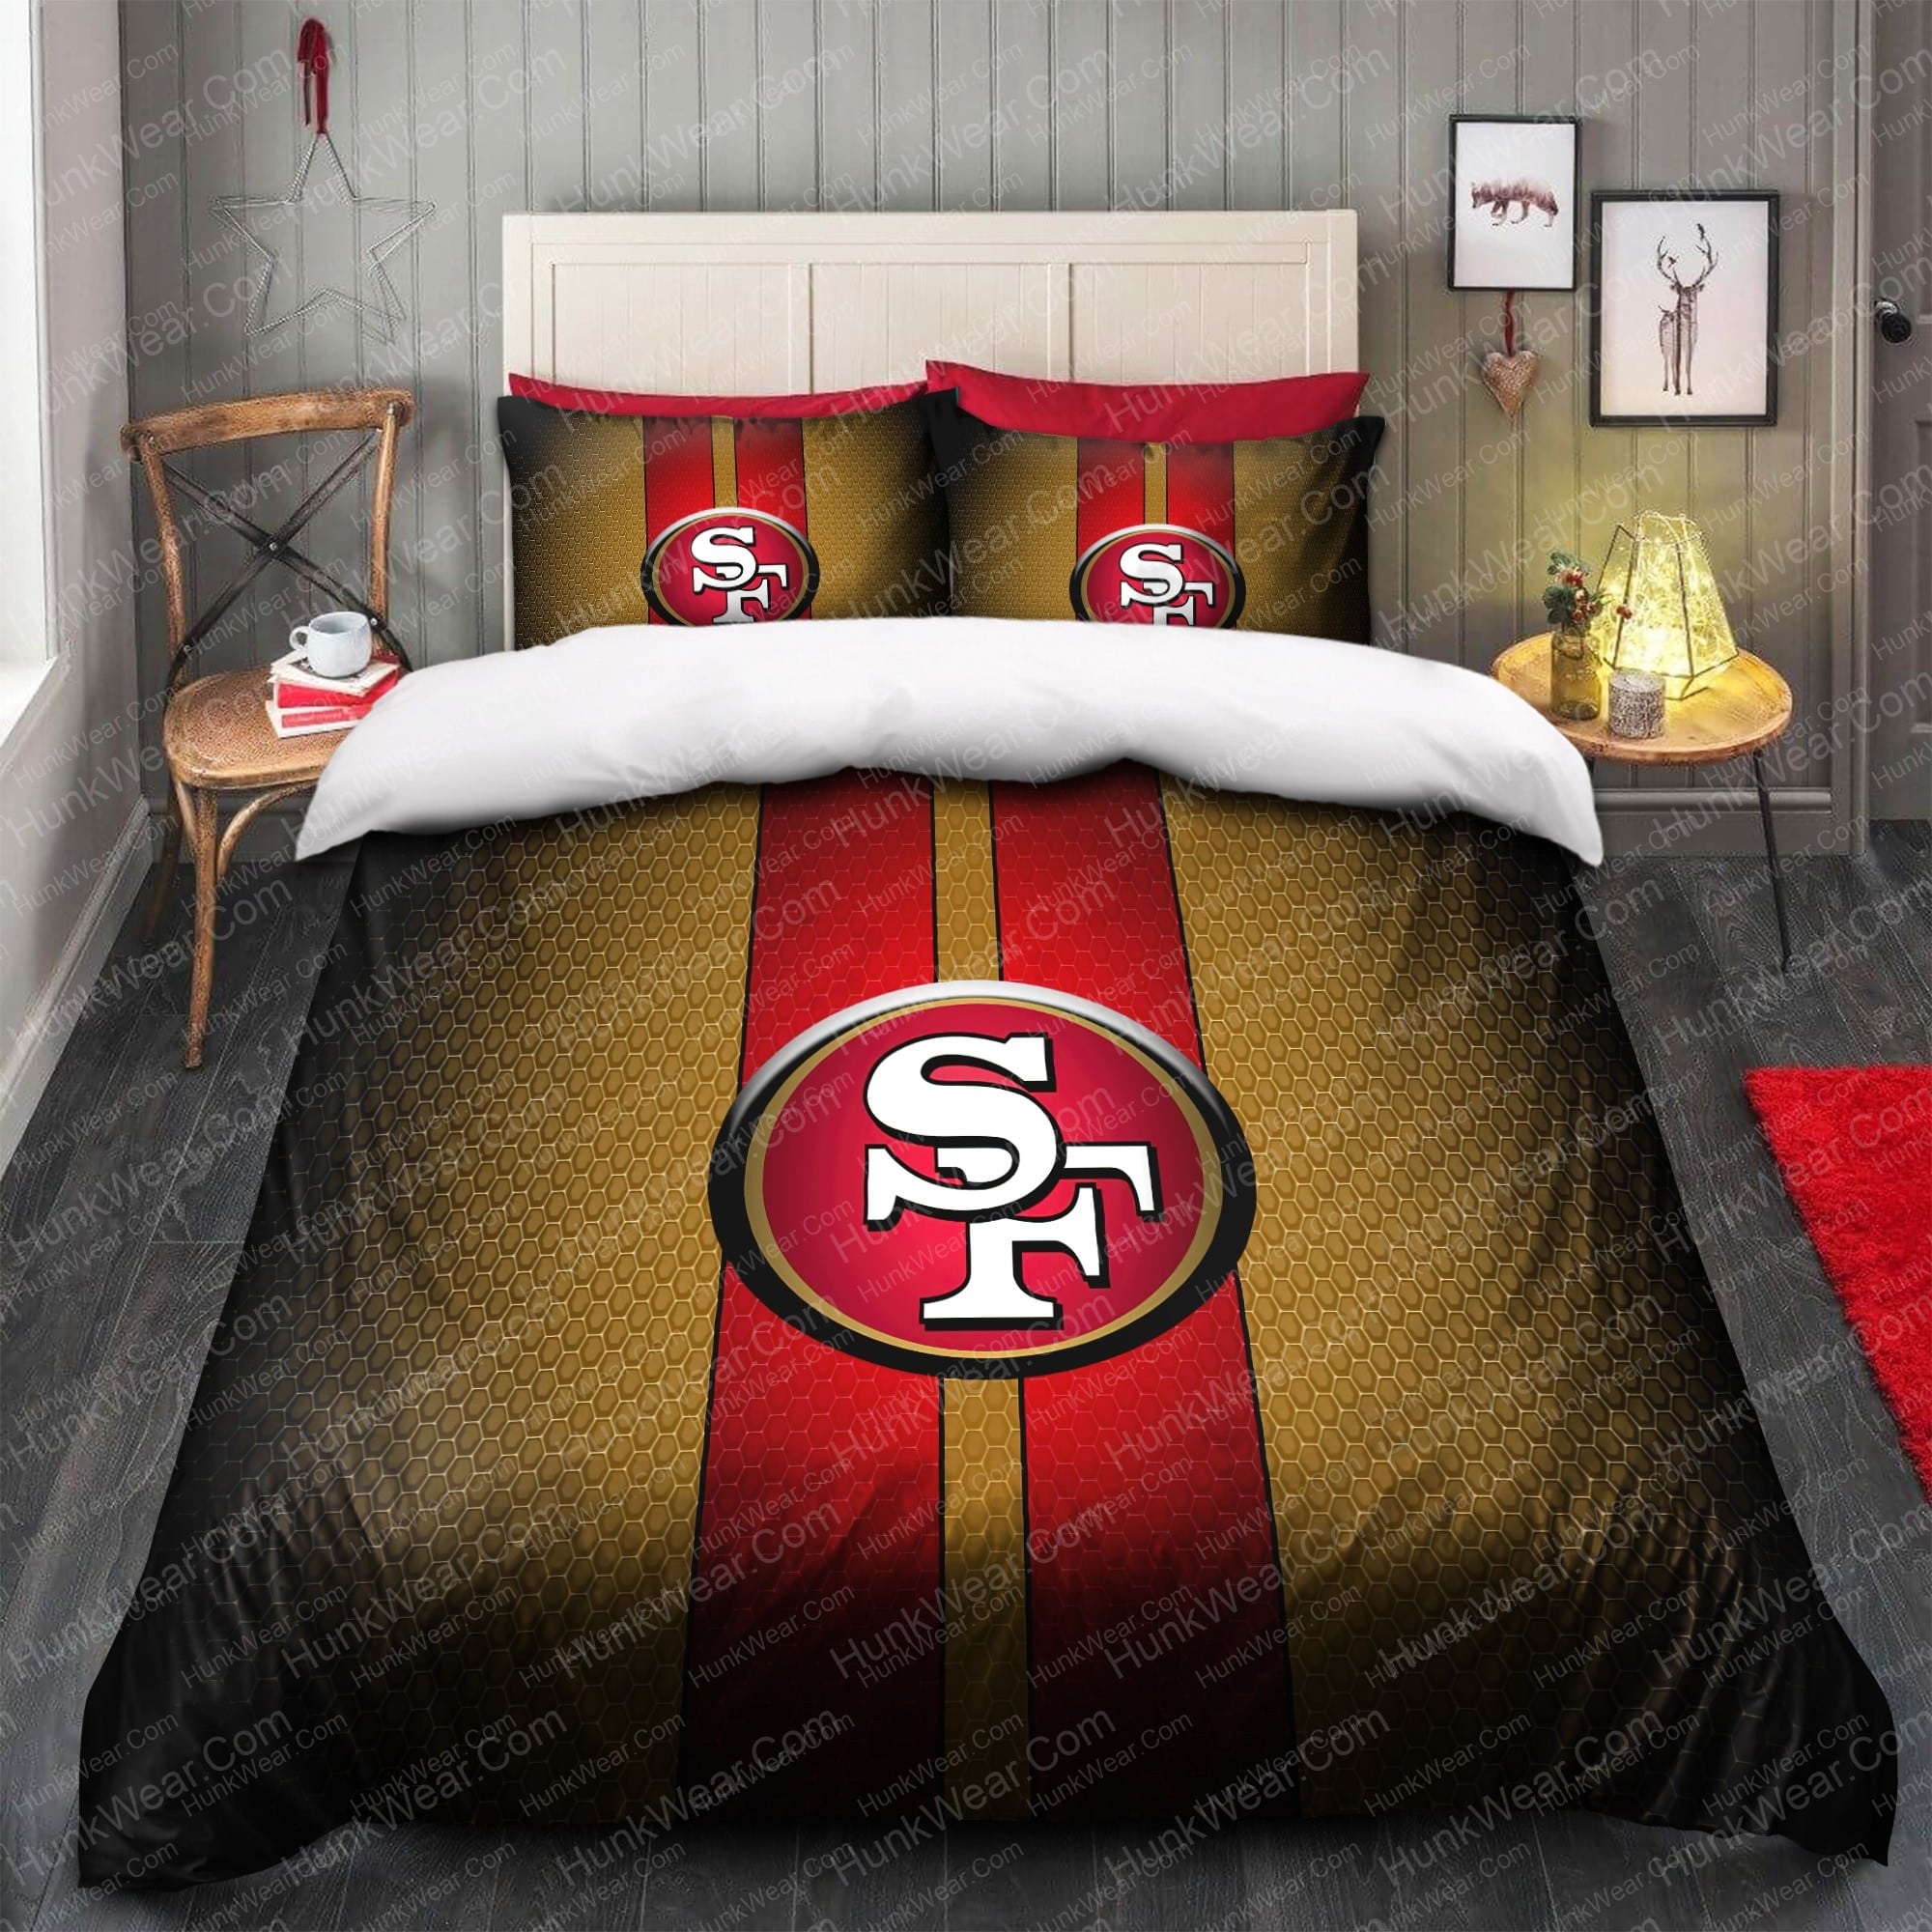 49ers logo bed set bedding set 1